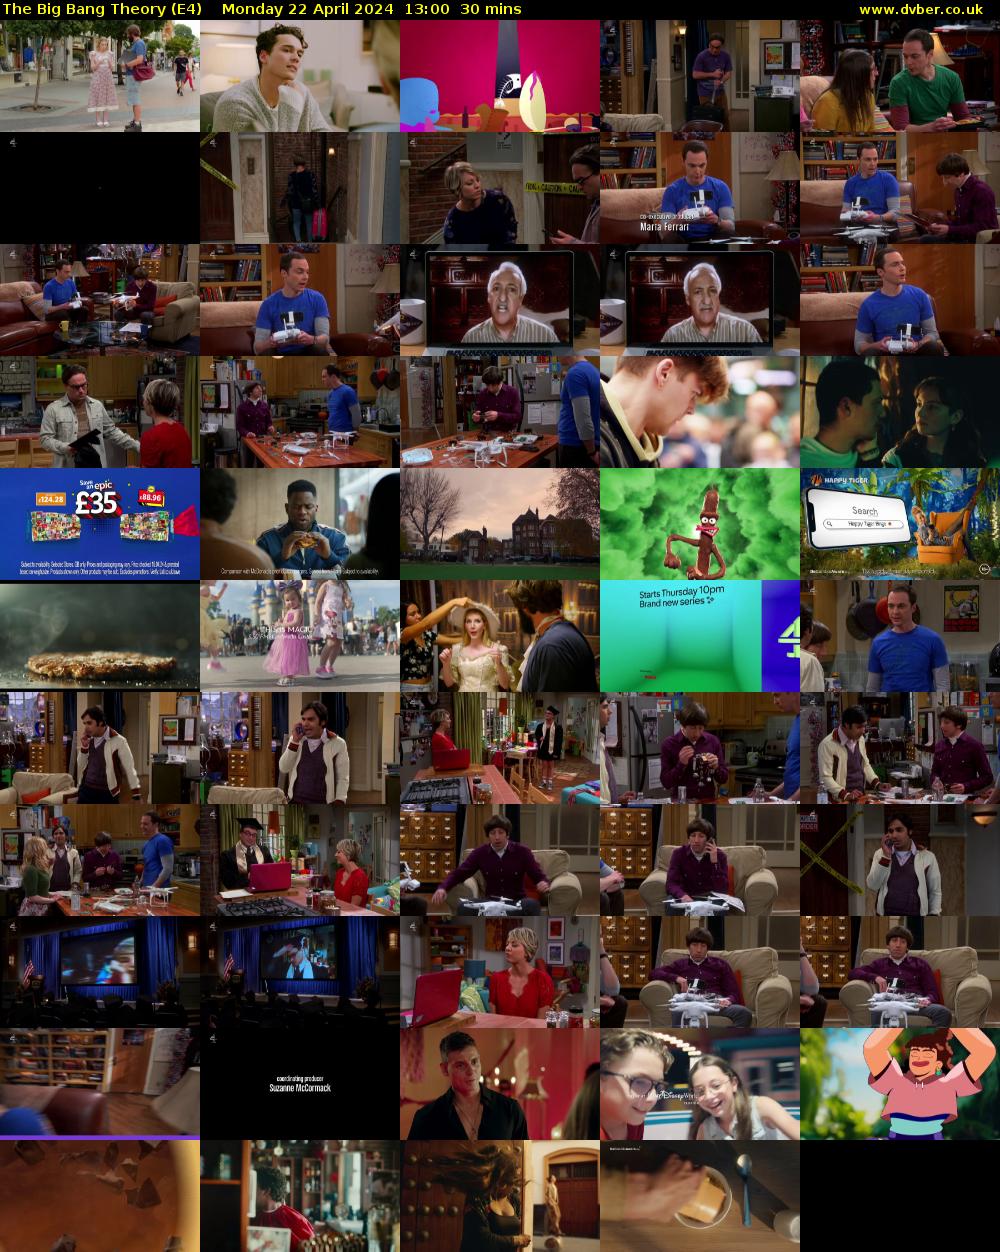 The Big Bang Theory (E4) Monday 22 April 2024 13:00 - 13:30